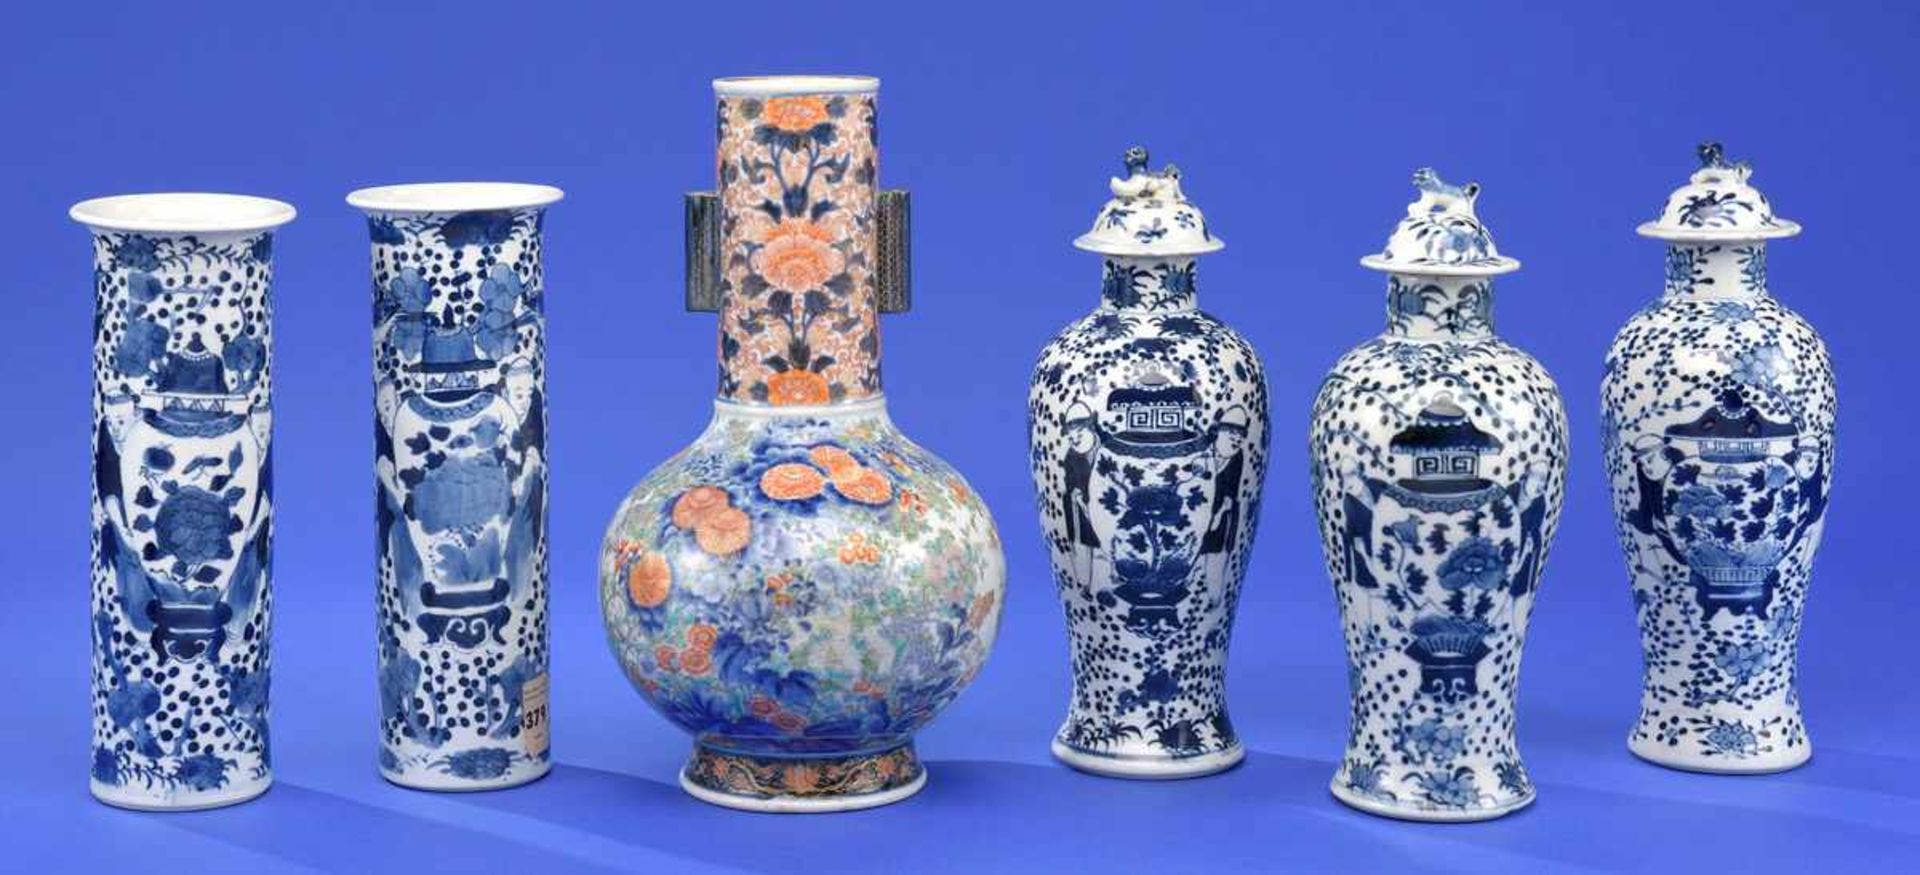 Sechs Vasen China und Japan, Ende 19. Jhdt.Bodenmarken. H 32 cm und kleiner.